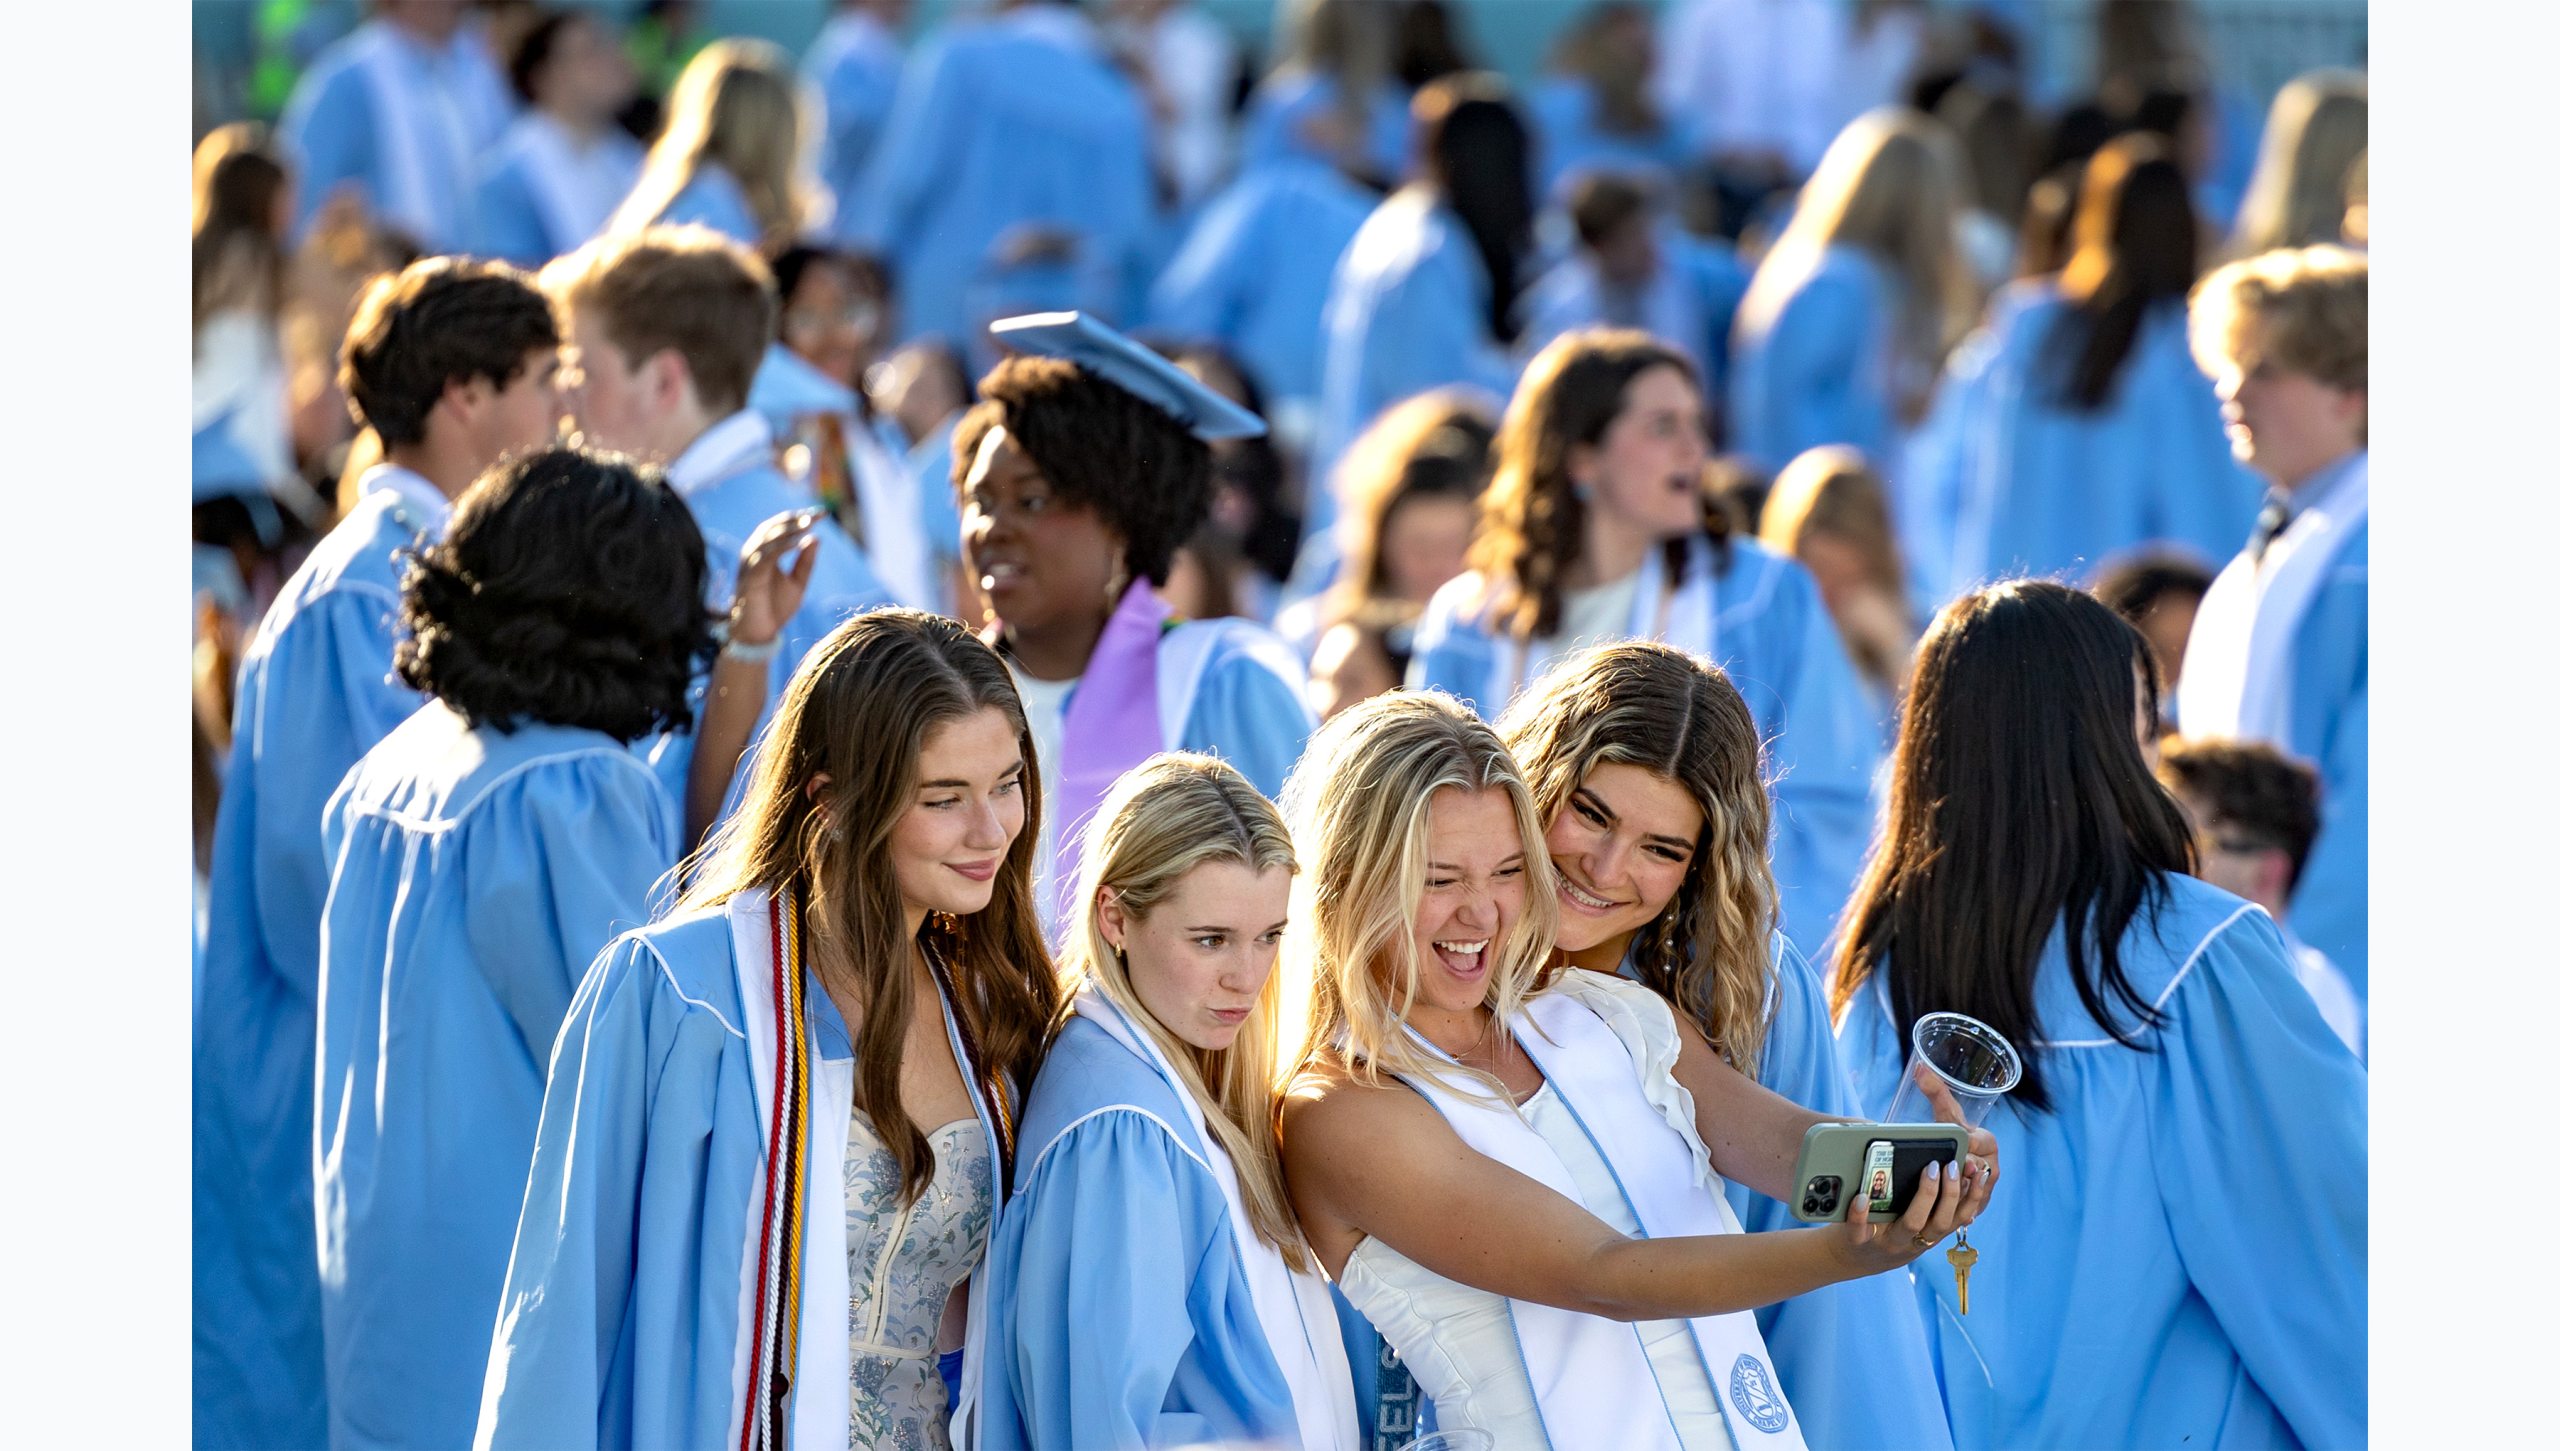 Graduates taking selfie together at Kenan Stadium